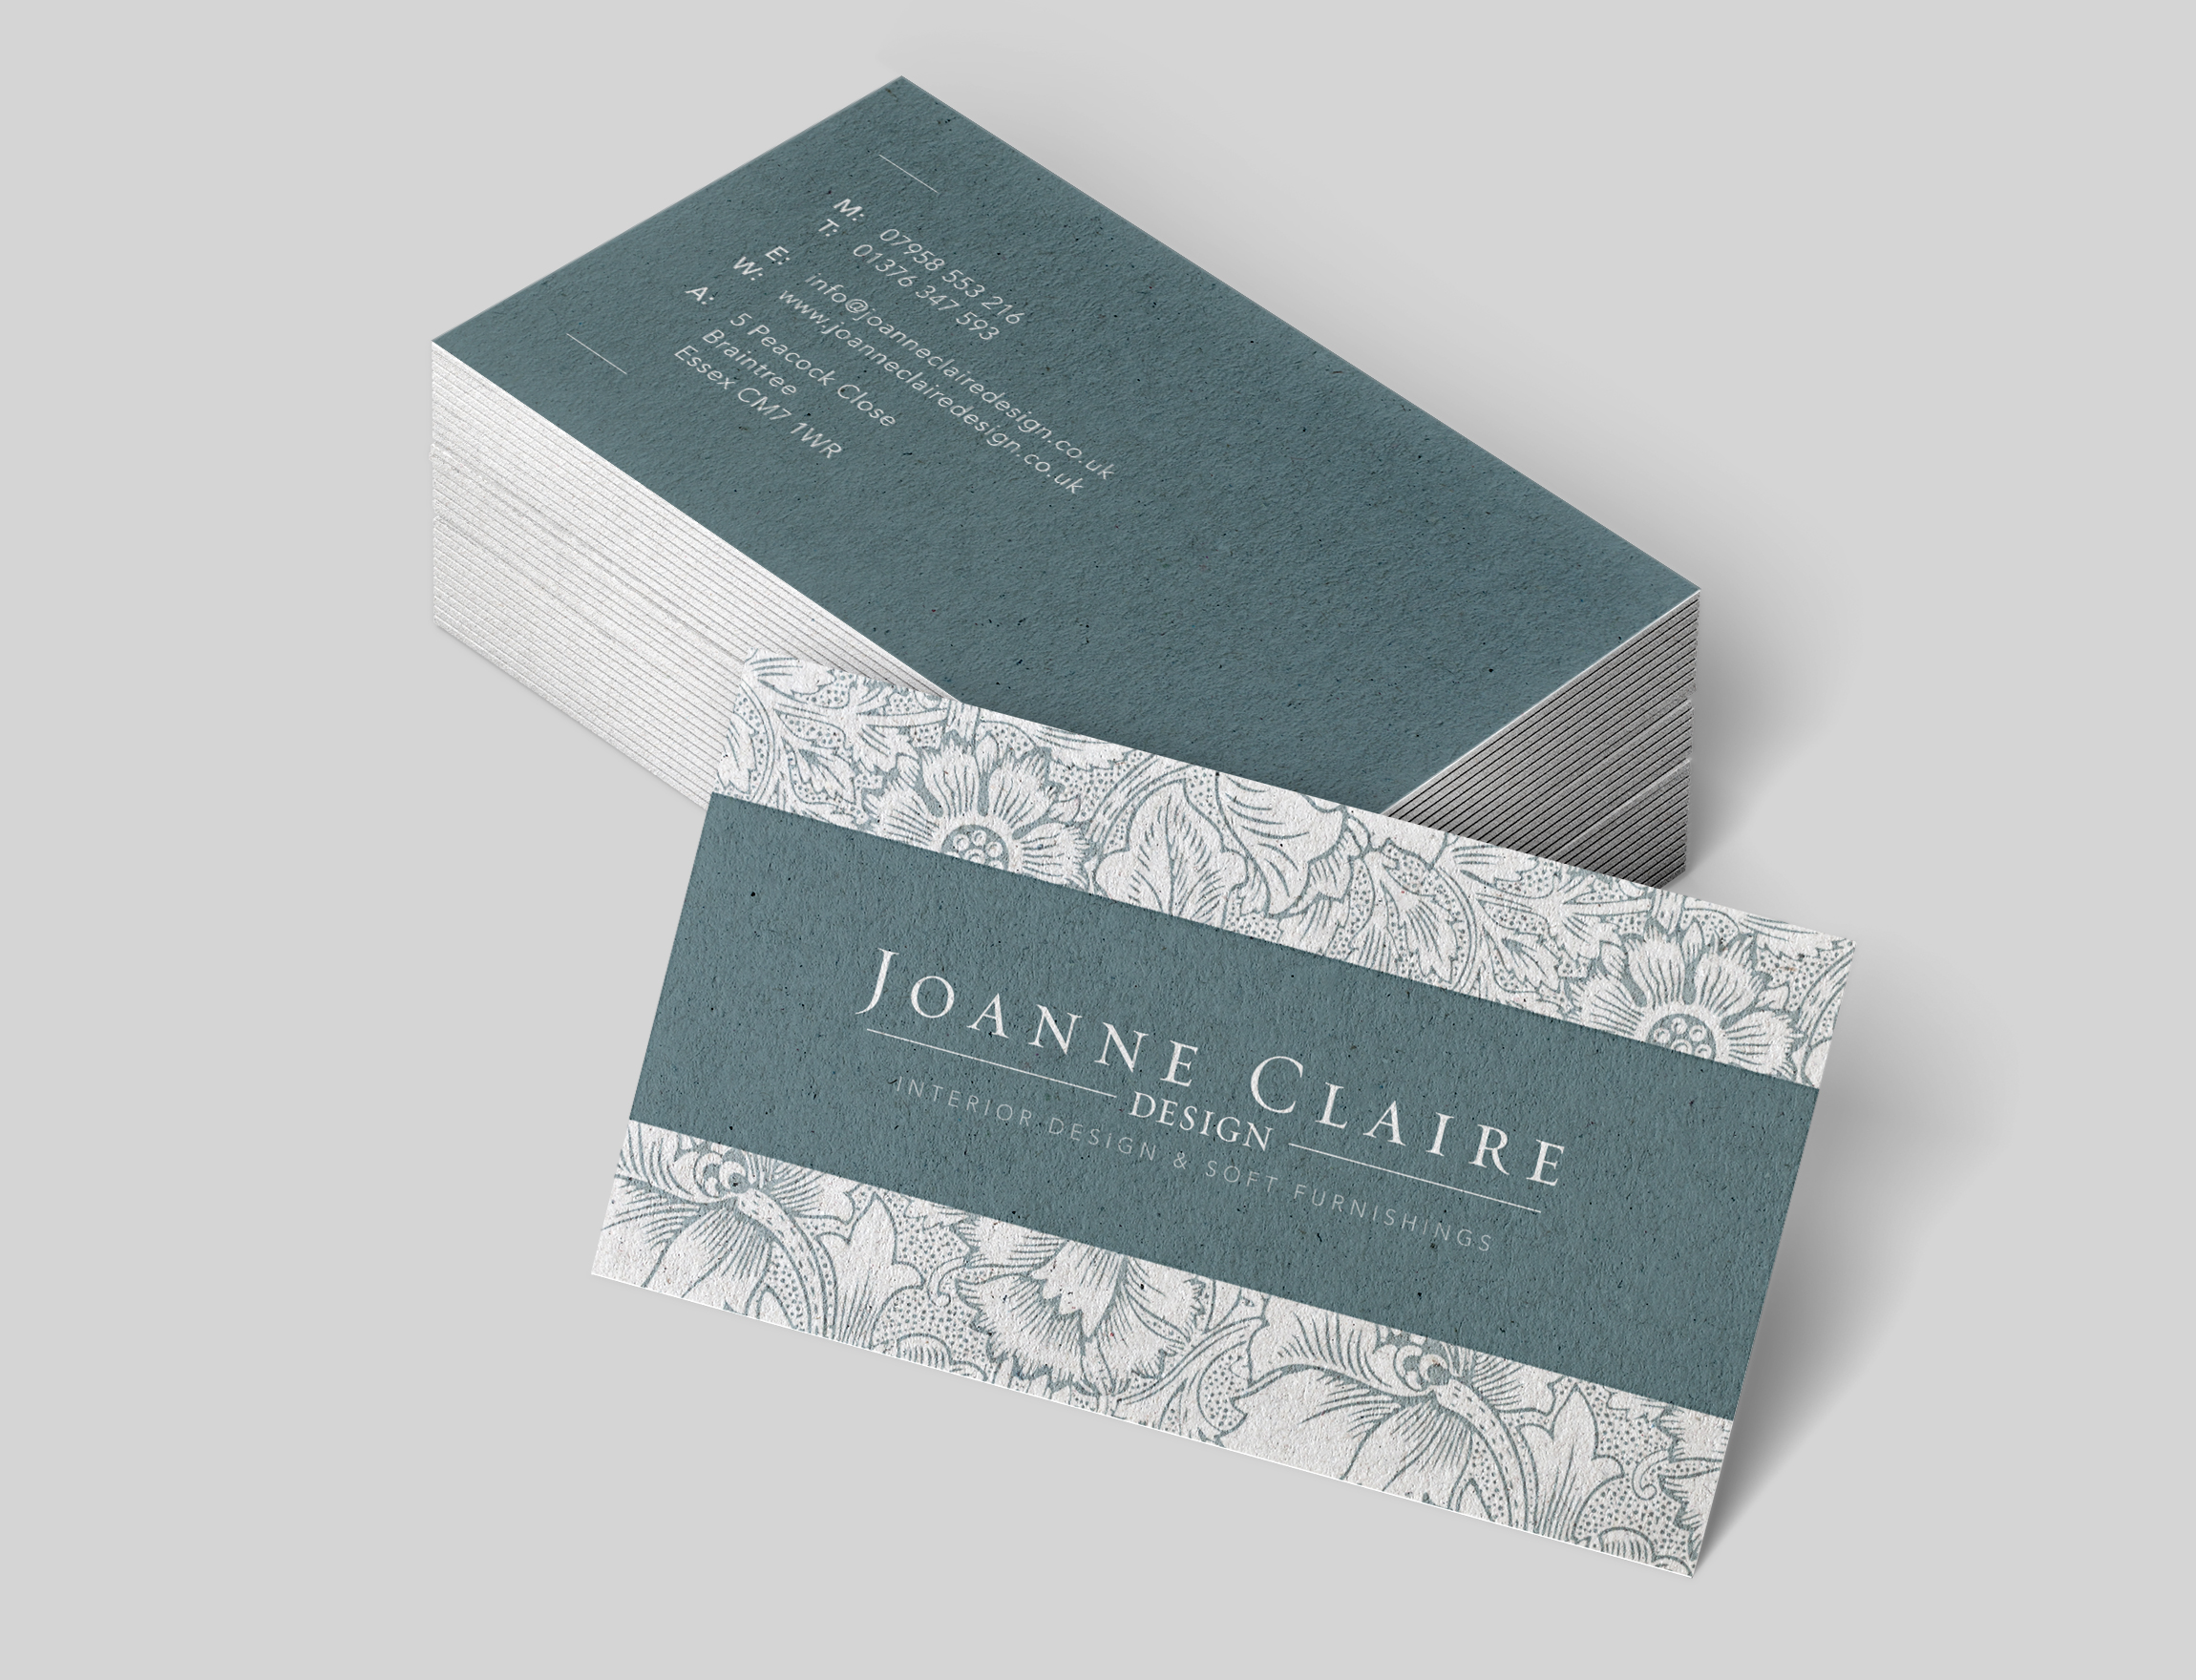 Joanne Claire Design